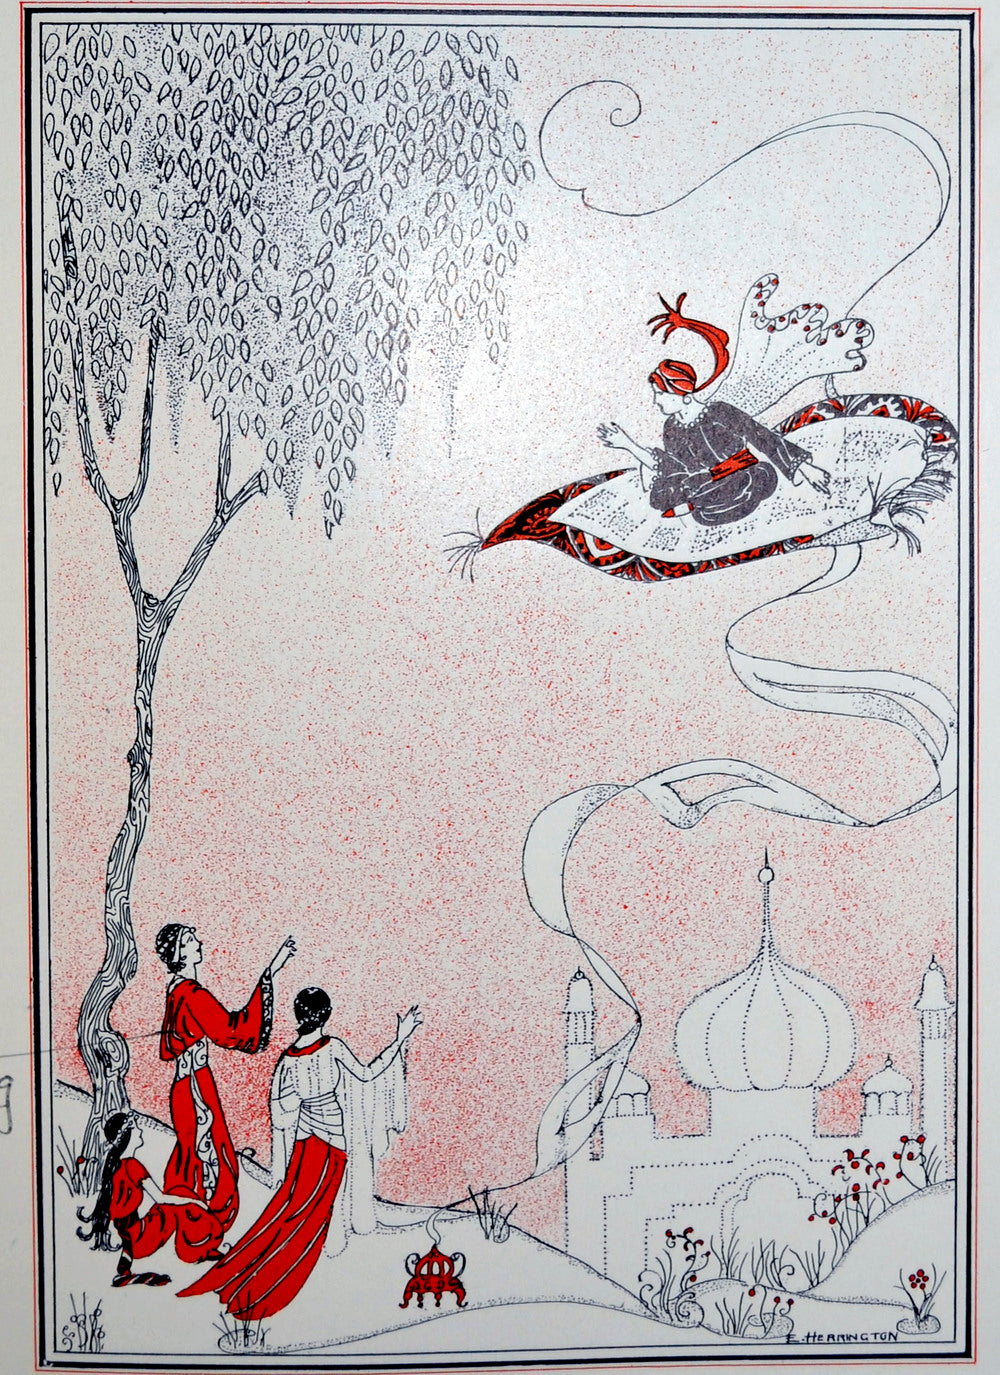 1920's yearbook art